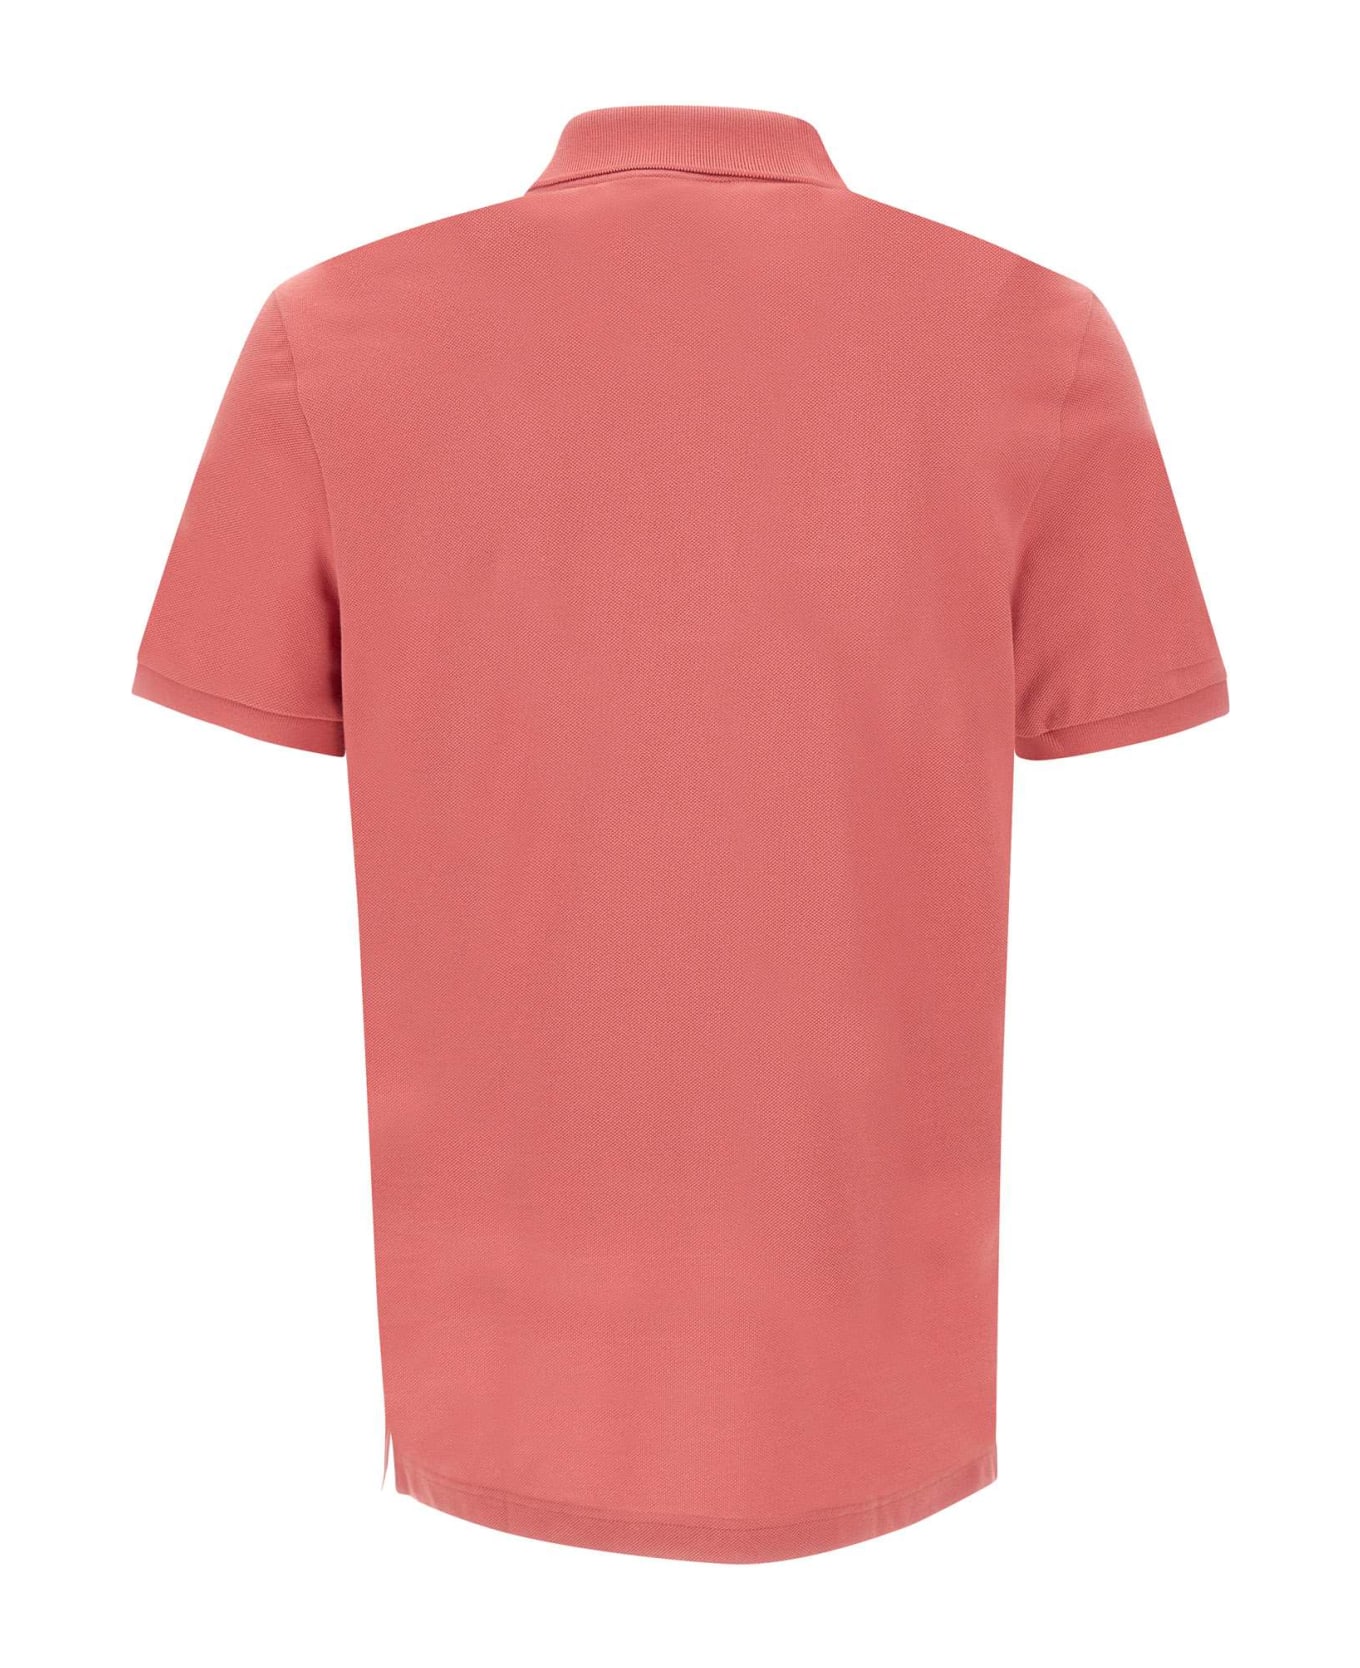 Lacoste Cotton Piquet Polo Shirt - ORANGE ポロシャツ